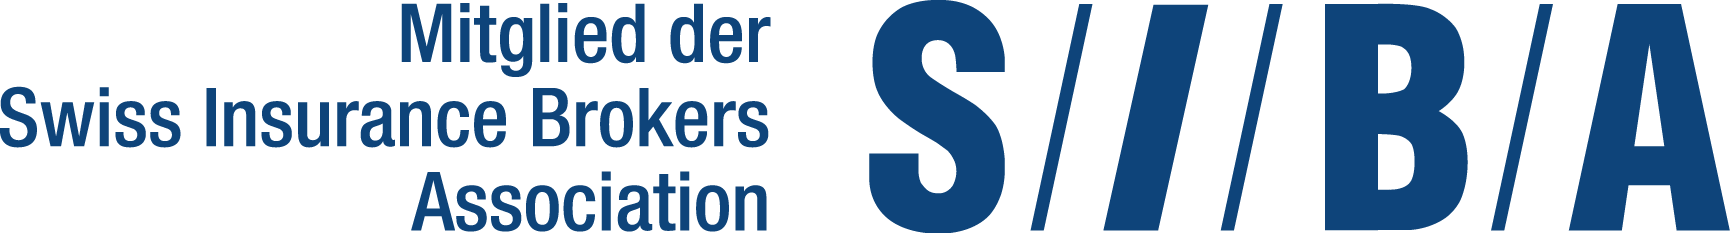 SIBA_Logo_dt